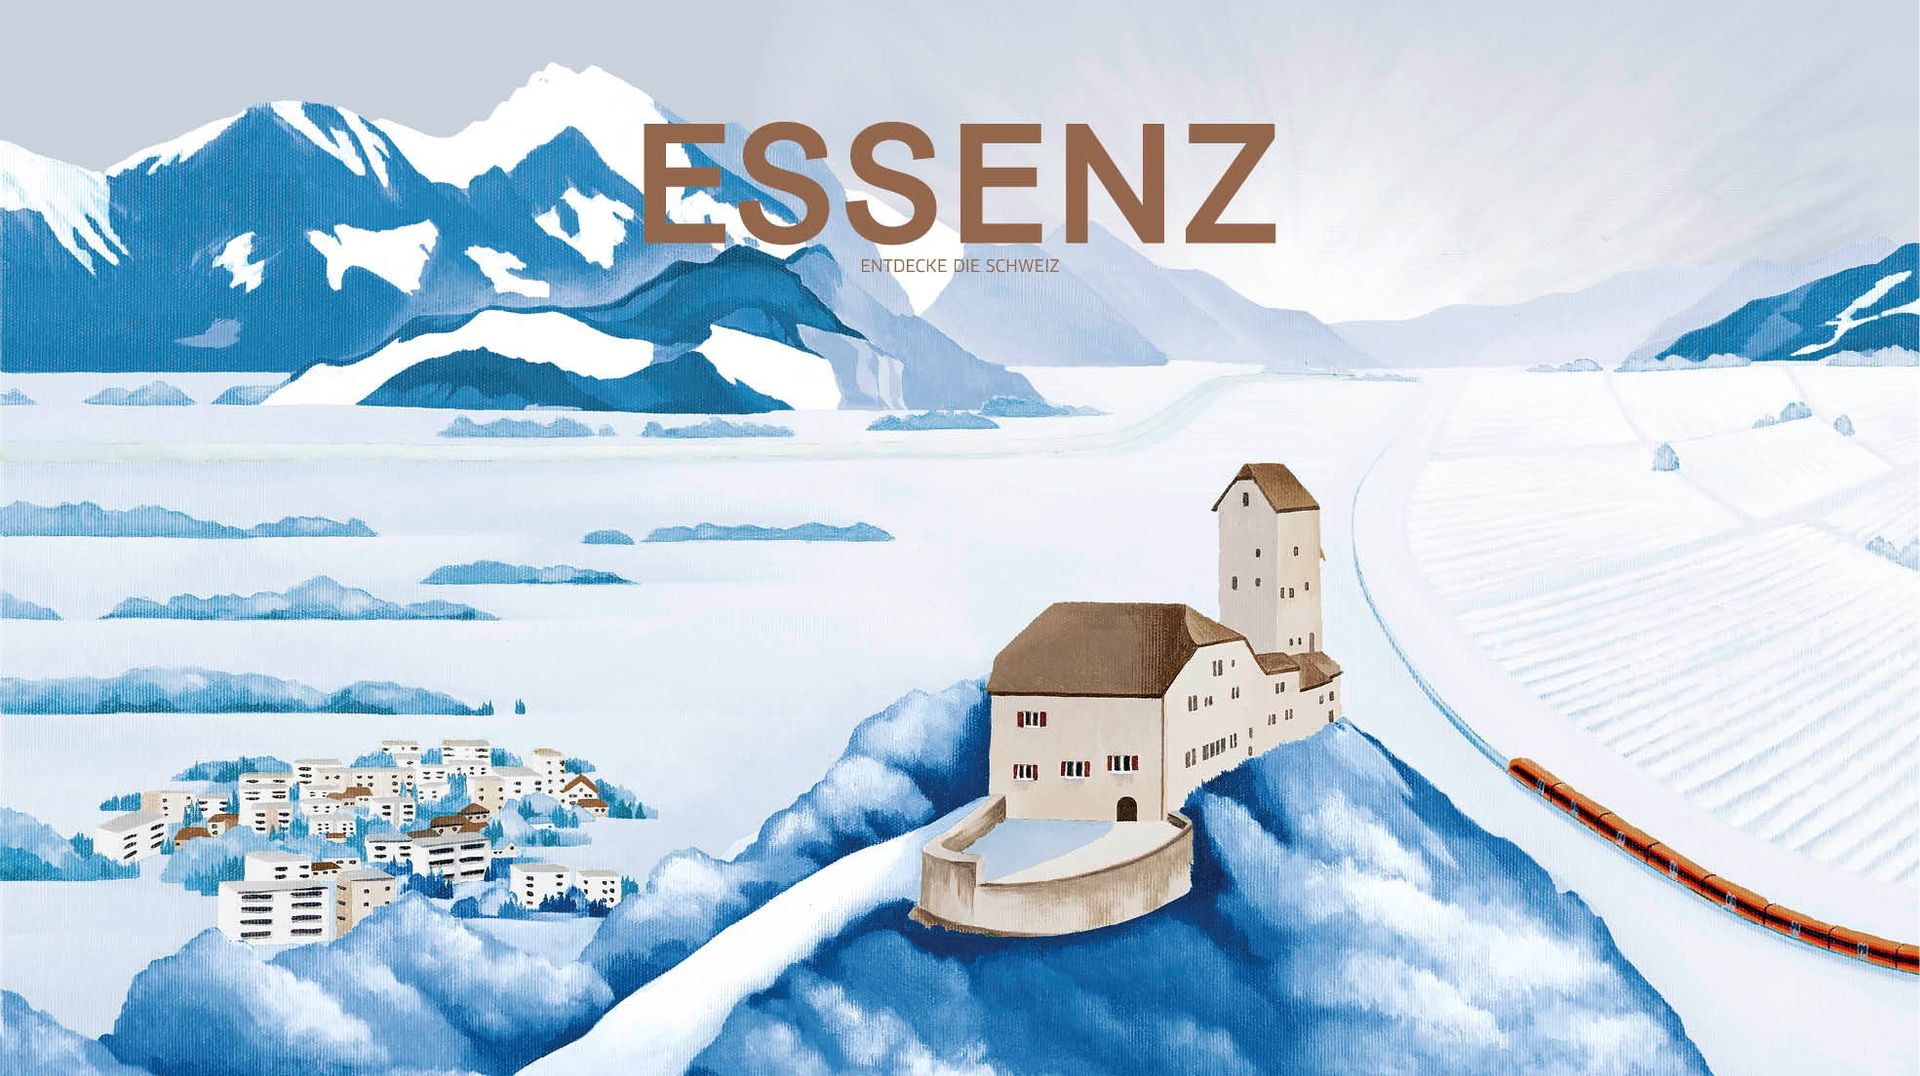 Winterausgabe des Kundenmagazins Essenz